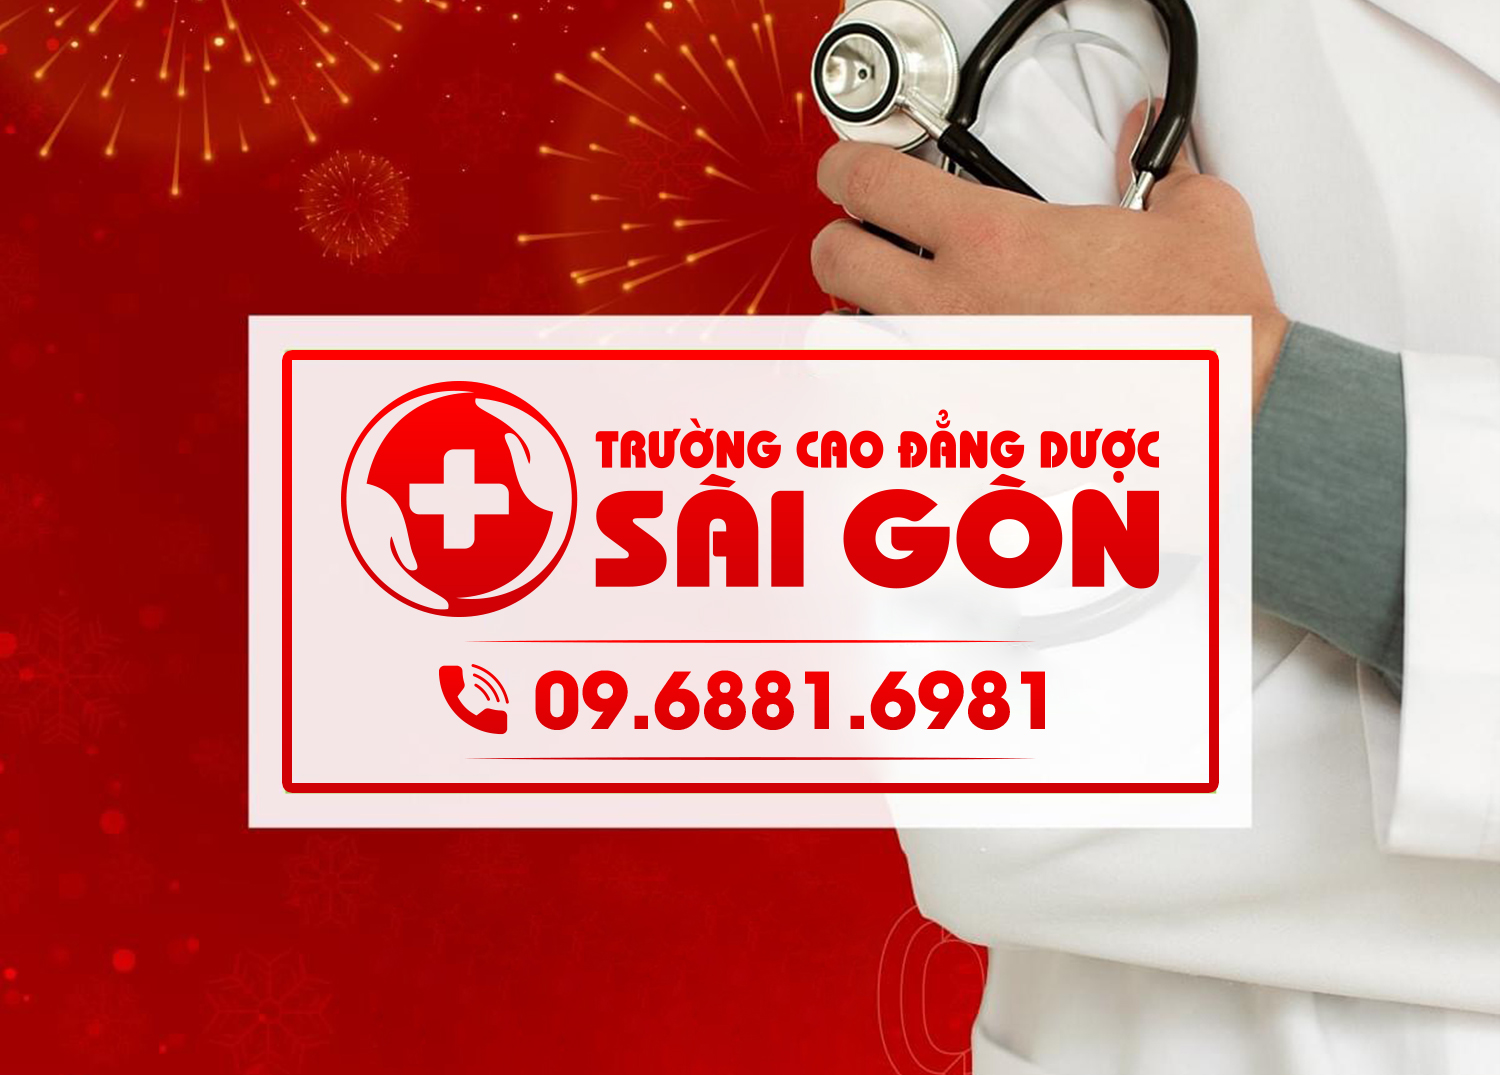 B.s Trường Dược Sài Gòn cảnh báo về bệnh gút ở người trẻ tuổi